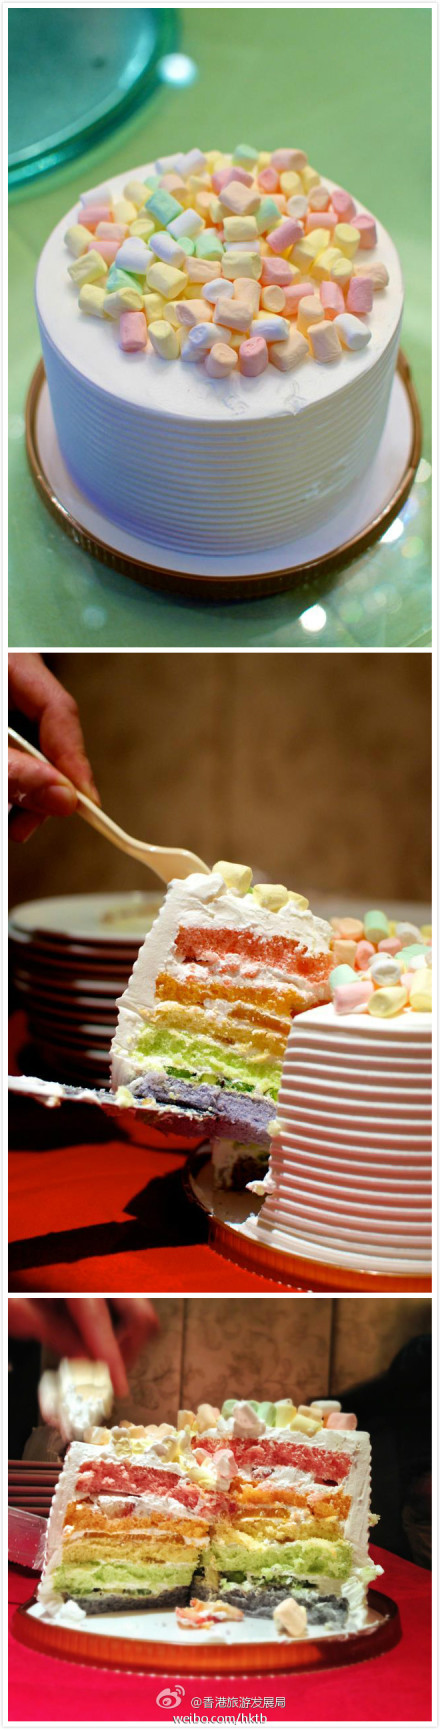 香港美食推荐 美心西饼的「快乐彩虹蛋糕」